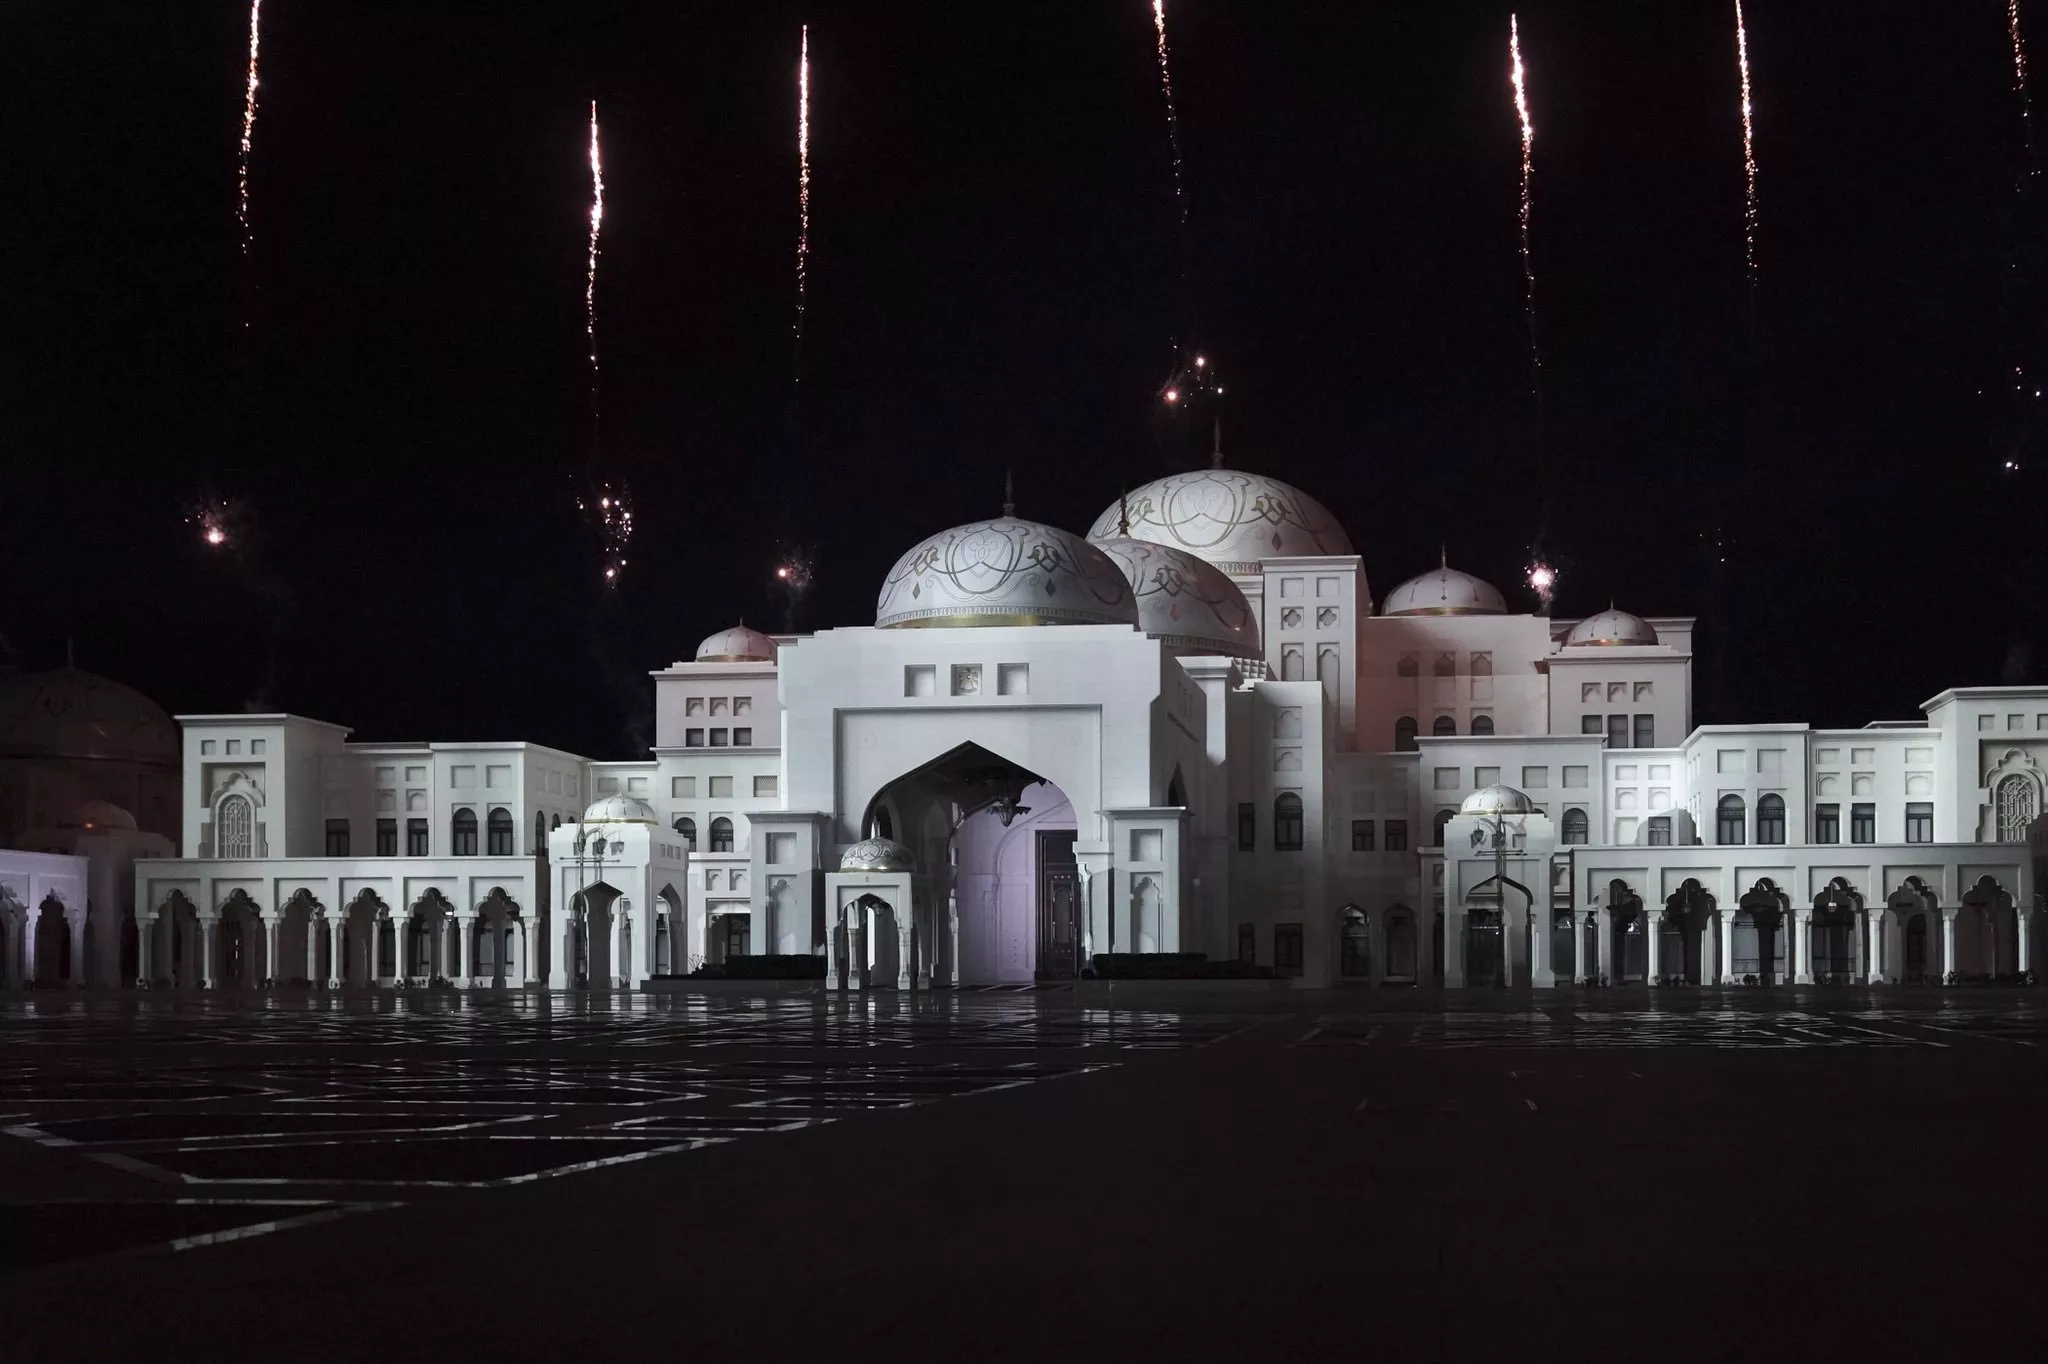 قصر الوطن في أبو ظبي يفتح أبوابه للعموم، وهذه هي أولى صوره